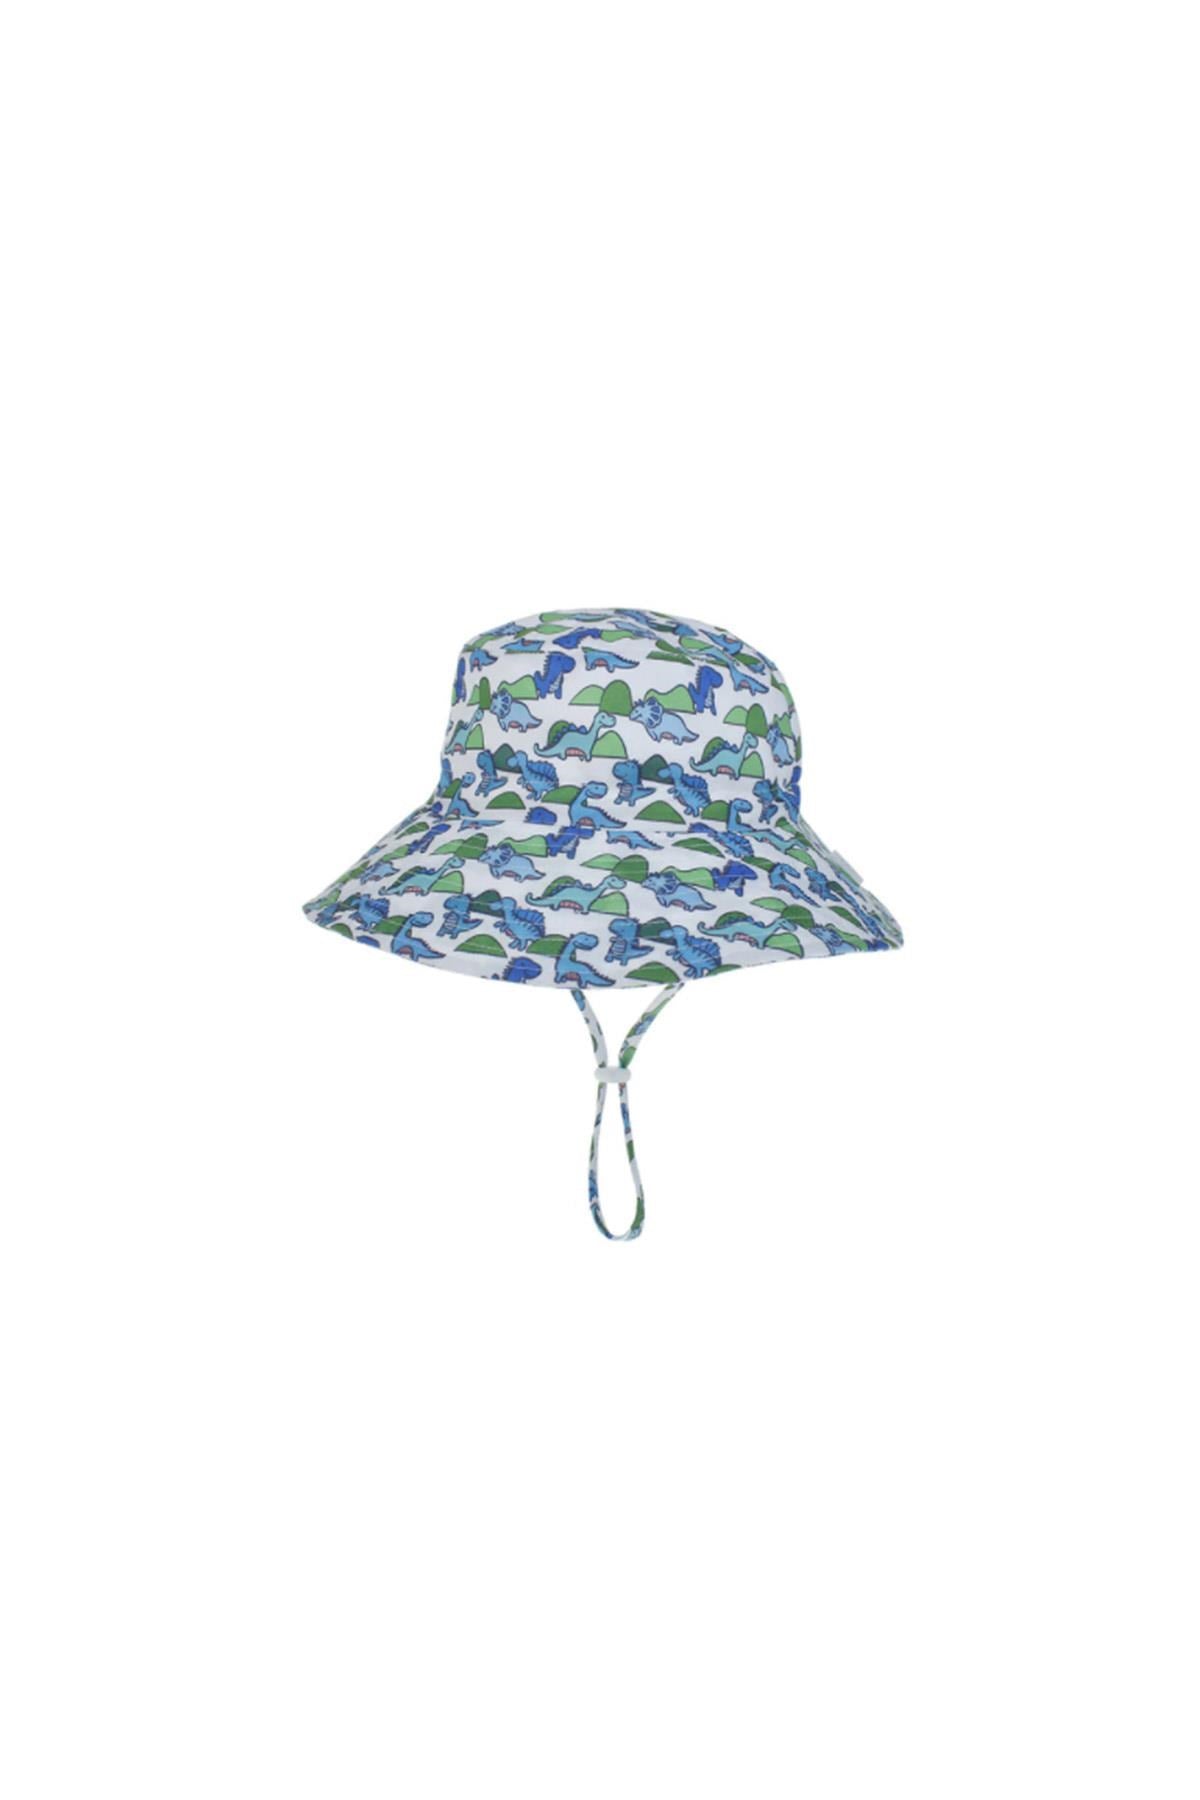 Petityu Uv Güneş Korumalı Şapka – Upf50+Dino Şapka